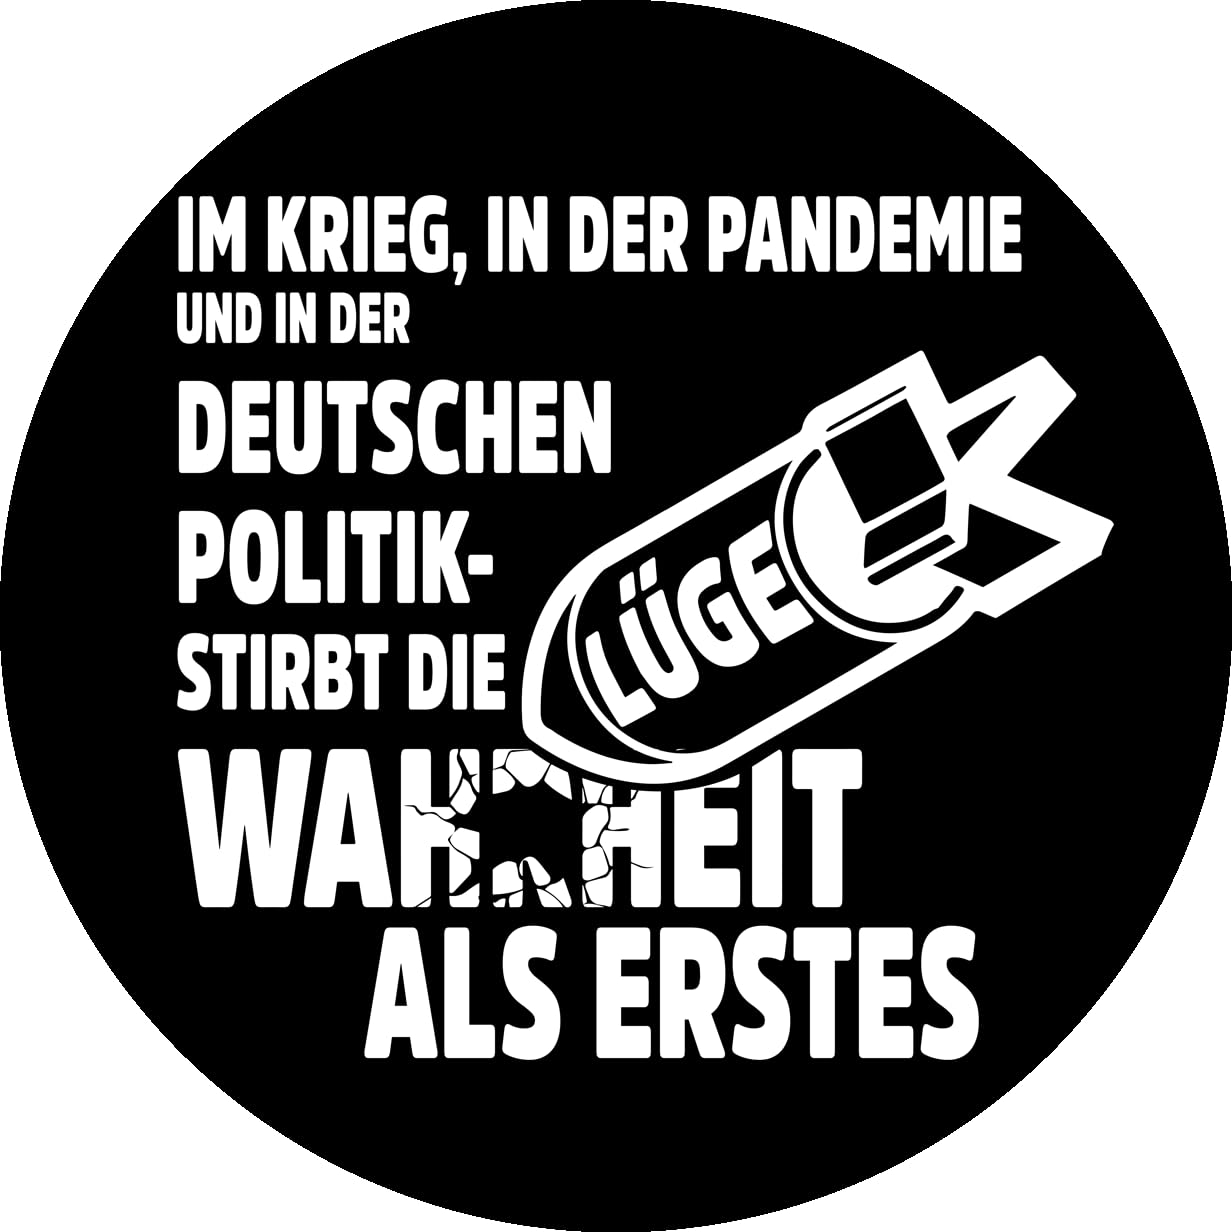 Sammys Shirt Store Im Krieg, Pandemie und Politik - stirbt die Wahrheit als erstes Vinyl-Aufkleber Sticker für Auto wetterfest 10cm von Sammys Shirt Store